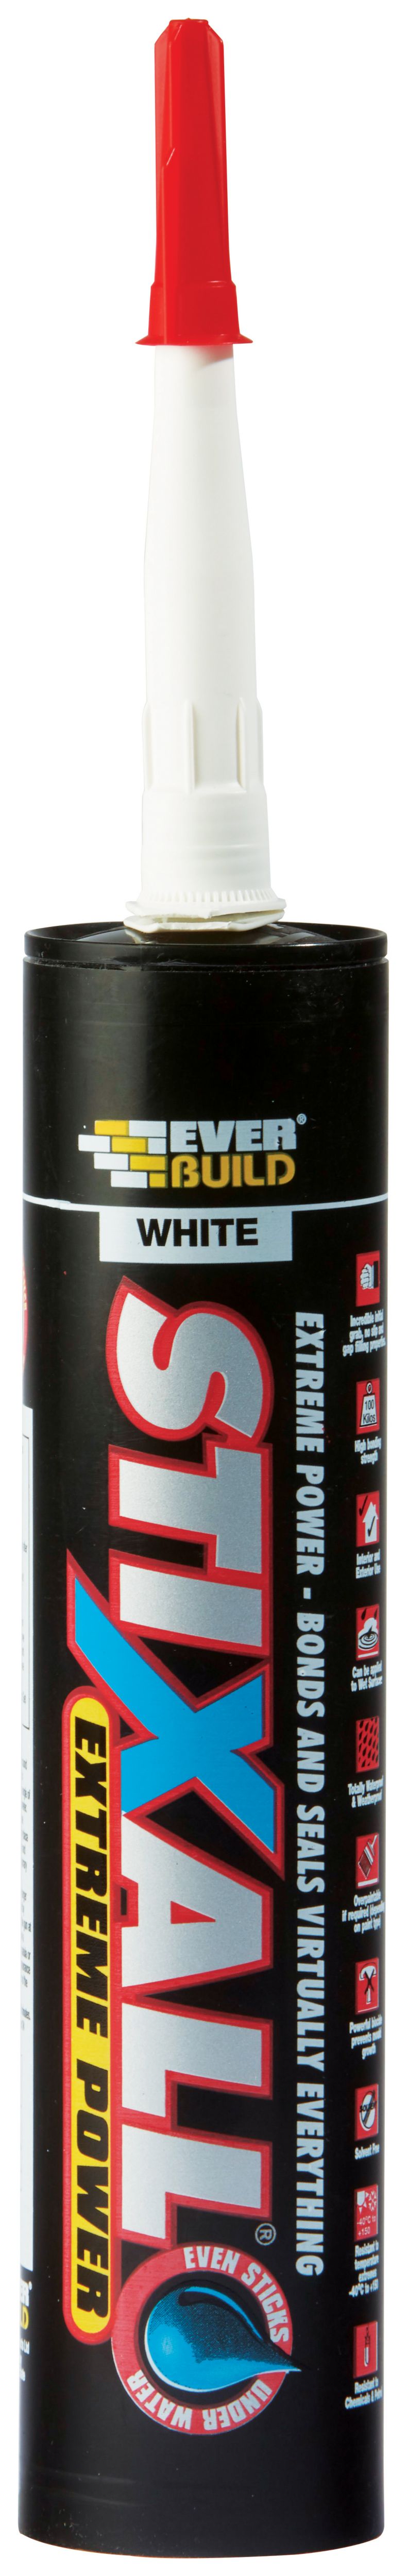 Everbuild White Stixall Extreme Power Sealant & Adhesive - 290ml